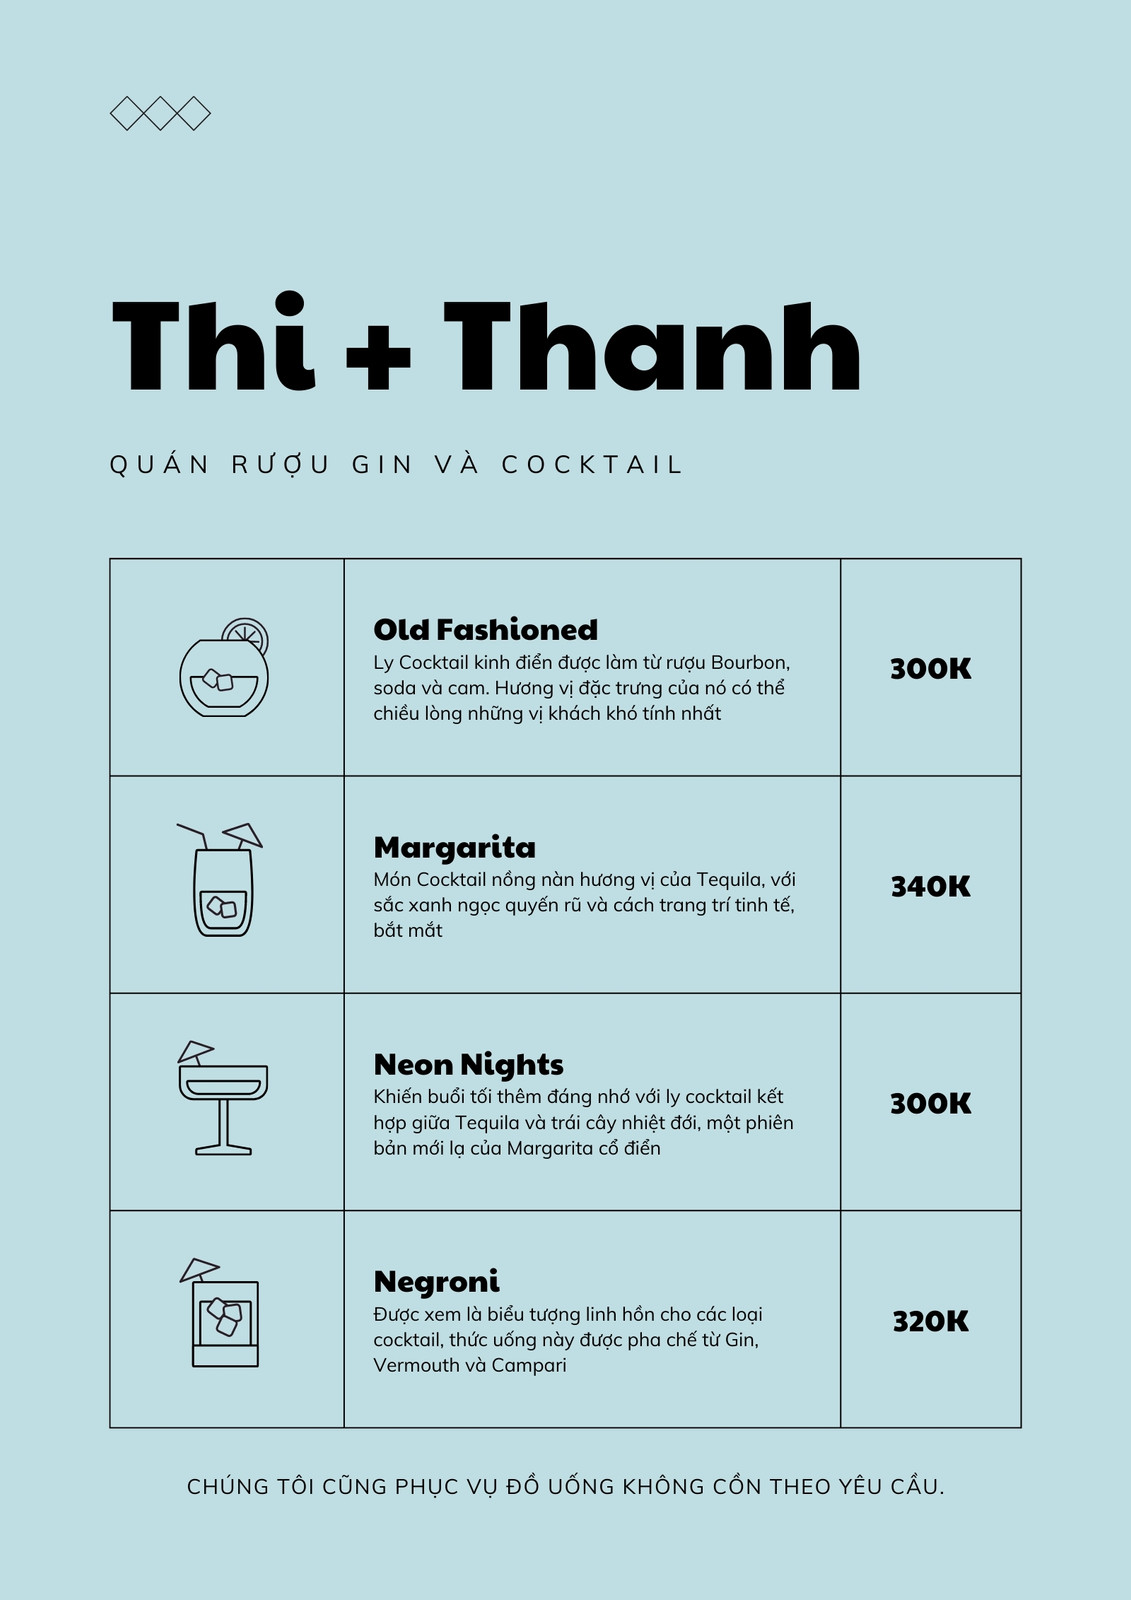 Thưởng thức món cocktail đa dạng từ bộ sưu tập menu thiết kế trực tuyến, đem lại cho bạn những trải nghiệm thưởng thức tuyệt vời nhất. Với các loại hương vị đa dạng, bạn sẽ tìm thấy một món cocktail hoàn hảo cho bất kỳ sự kiện nào.